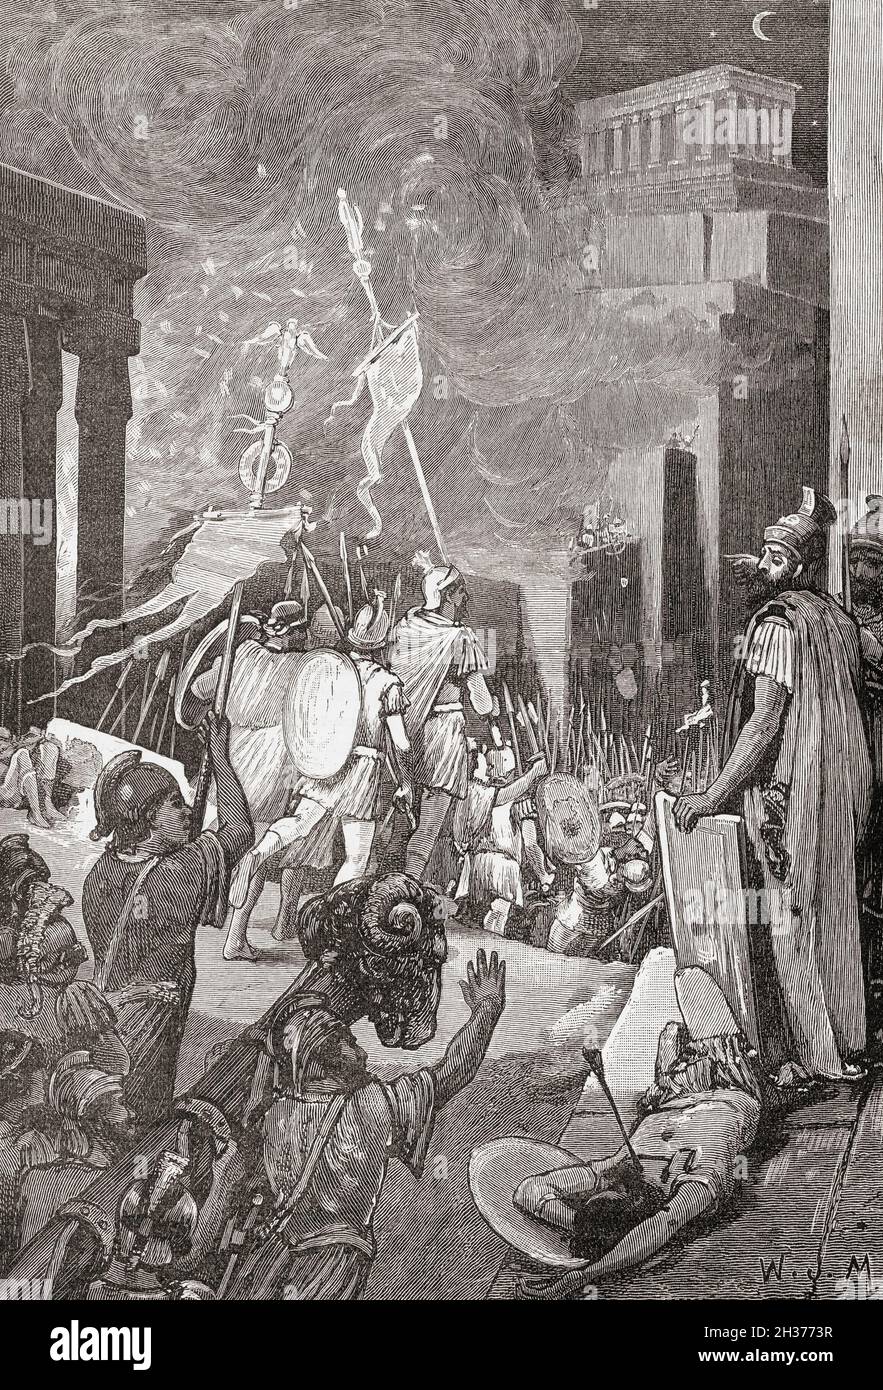 Der Angriff auf die Zitadelle von Karthago während des Dritten Punischen Krieges, 149 v. Chr.. Aus Cassells Illustrated Universal History, veröffentlicht 1883. Stockfoto